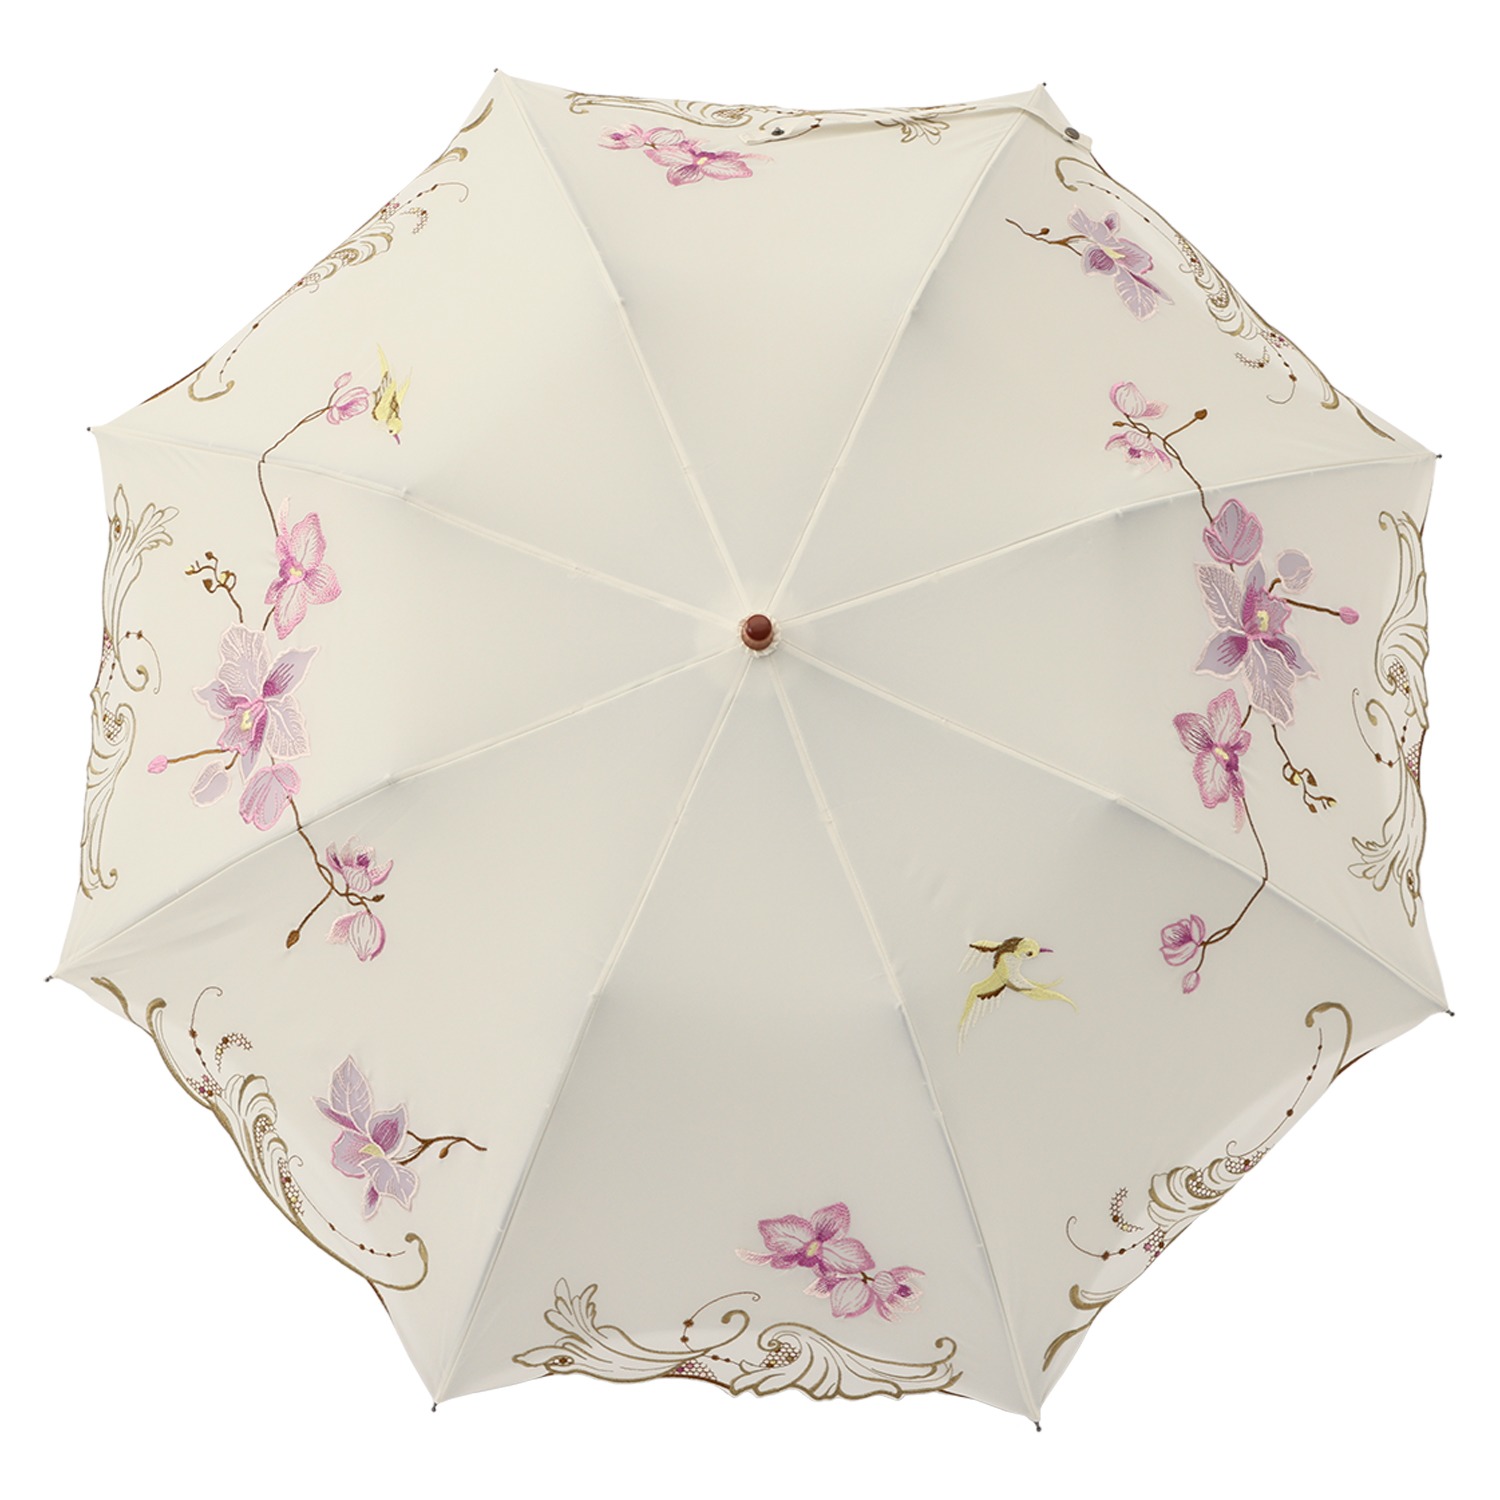 シノワズリーモダン 女優日傘プレミアム 蘭花刺しゅう かわず張り ショート折りたたみ日傘